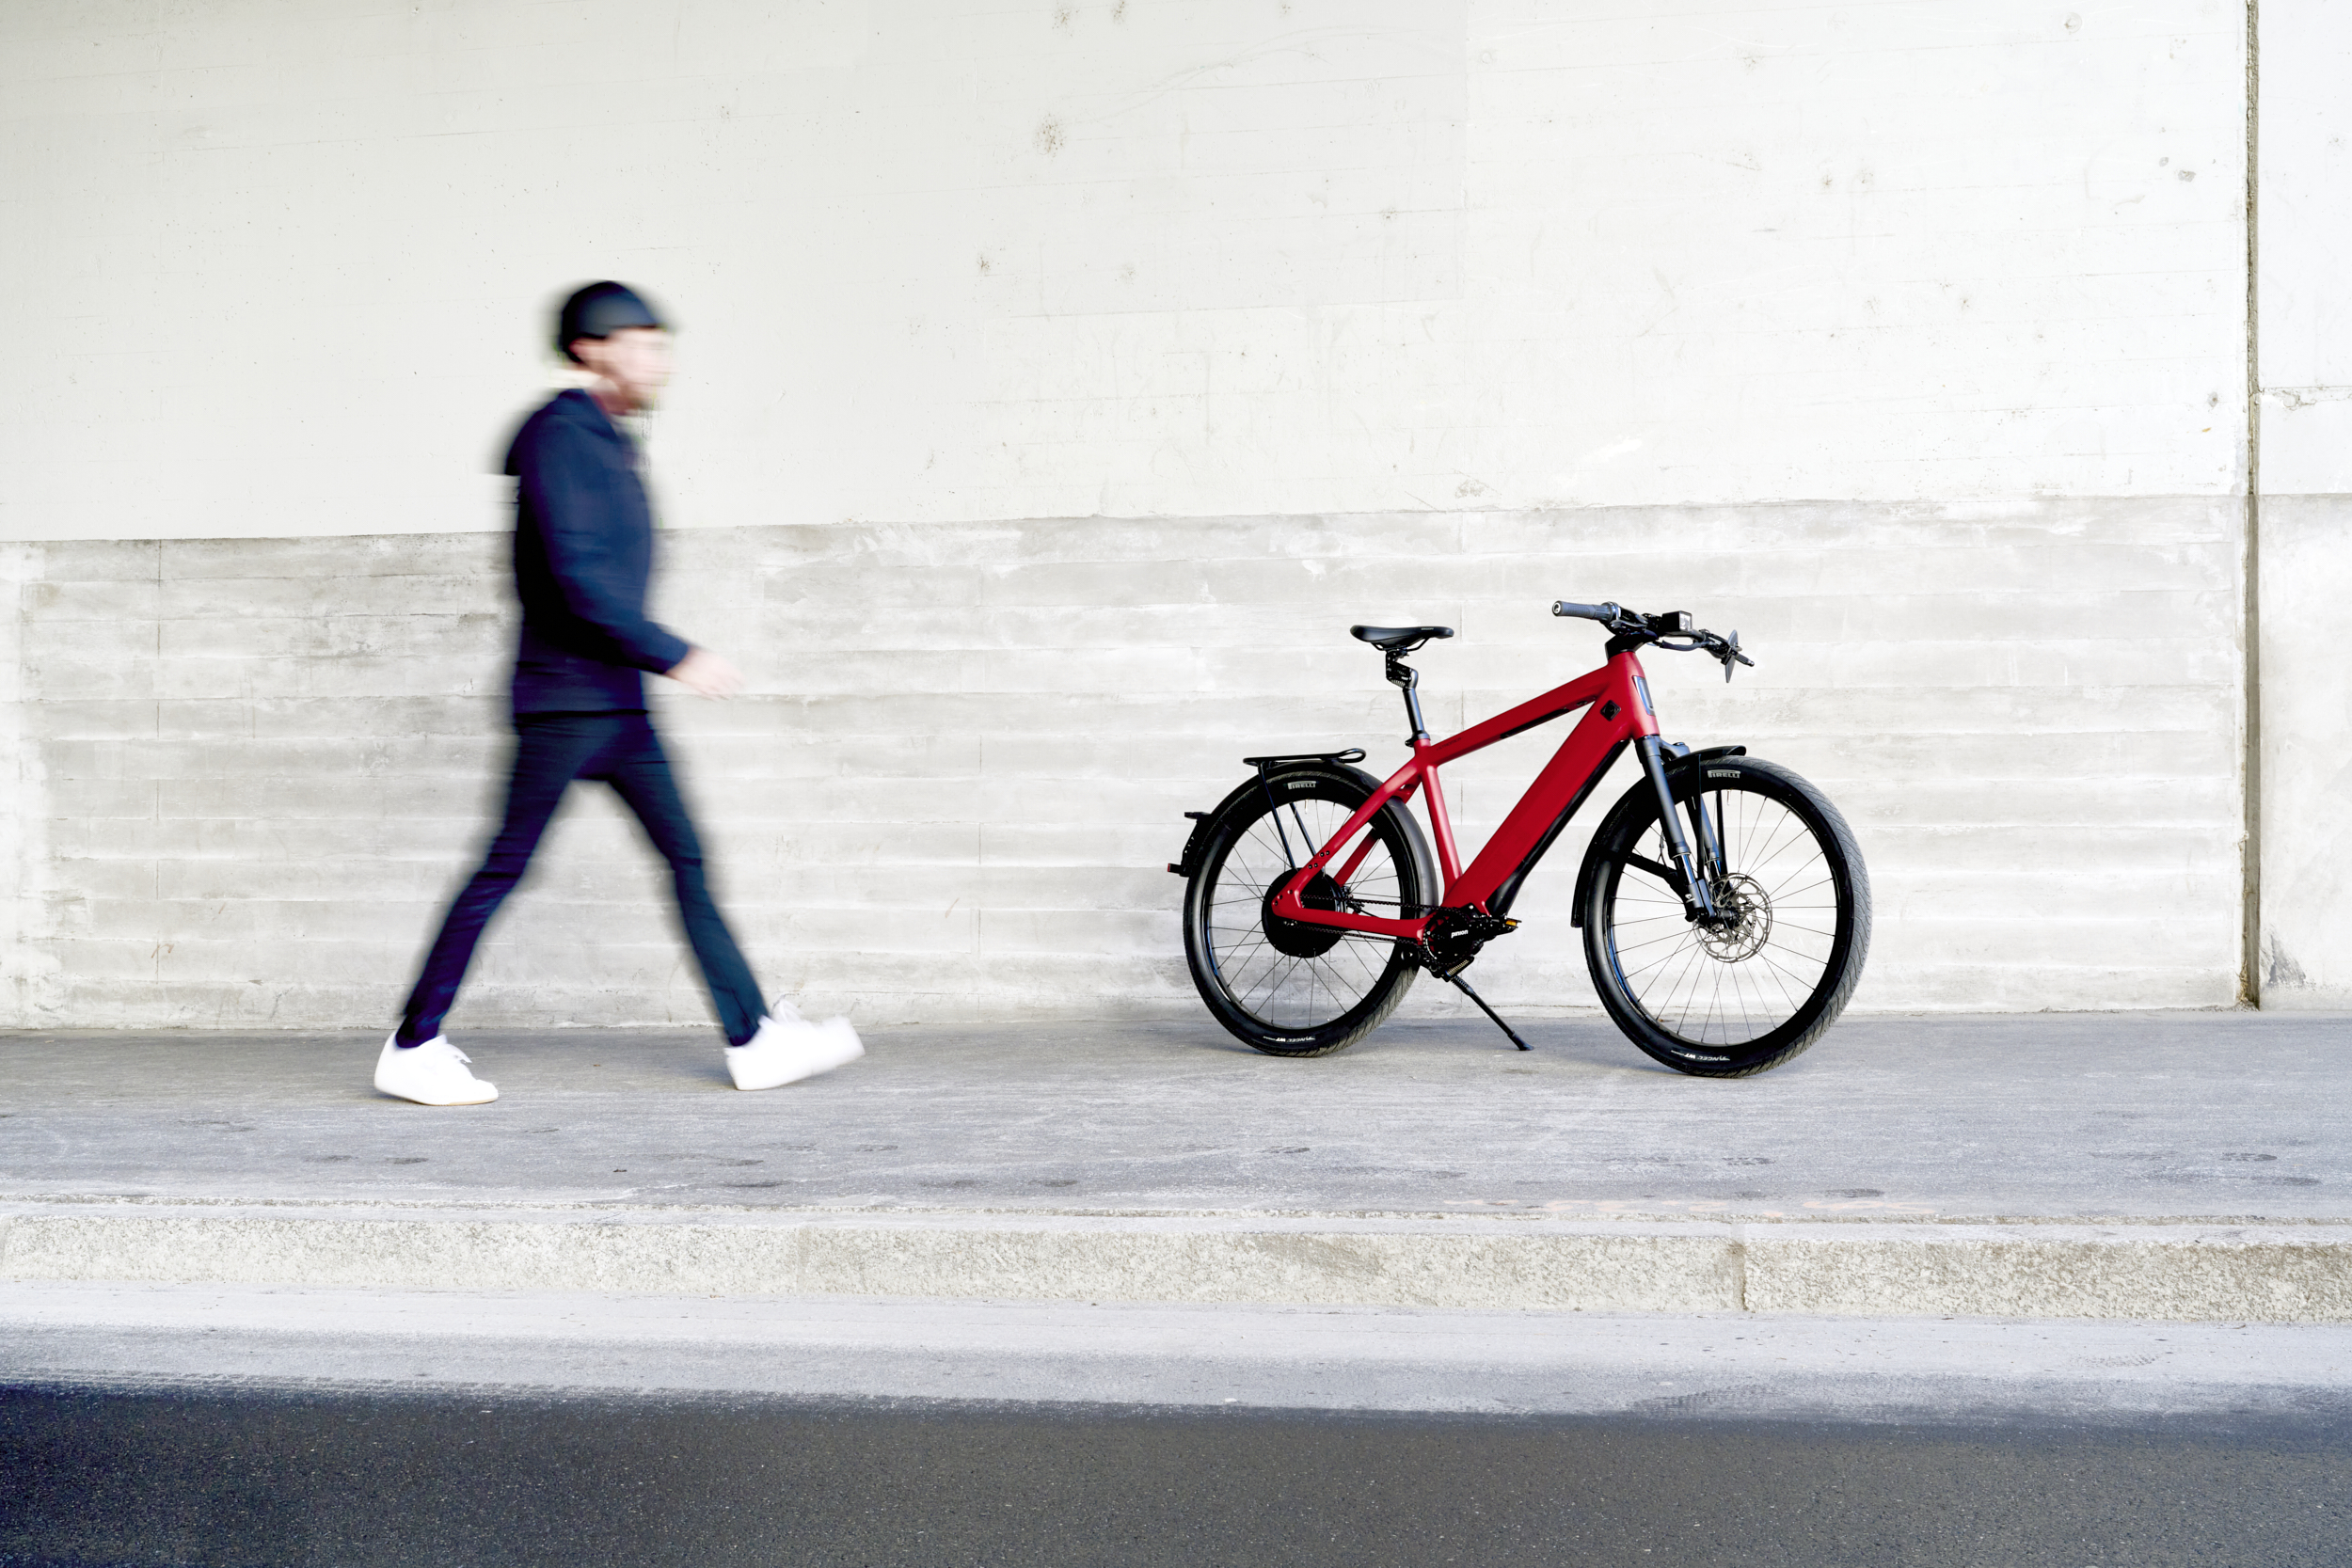 Lire la suite à propos de l’article Le speedbike peut-il se faire une place dans nos villes ?